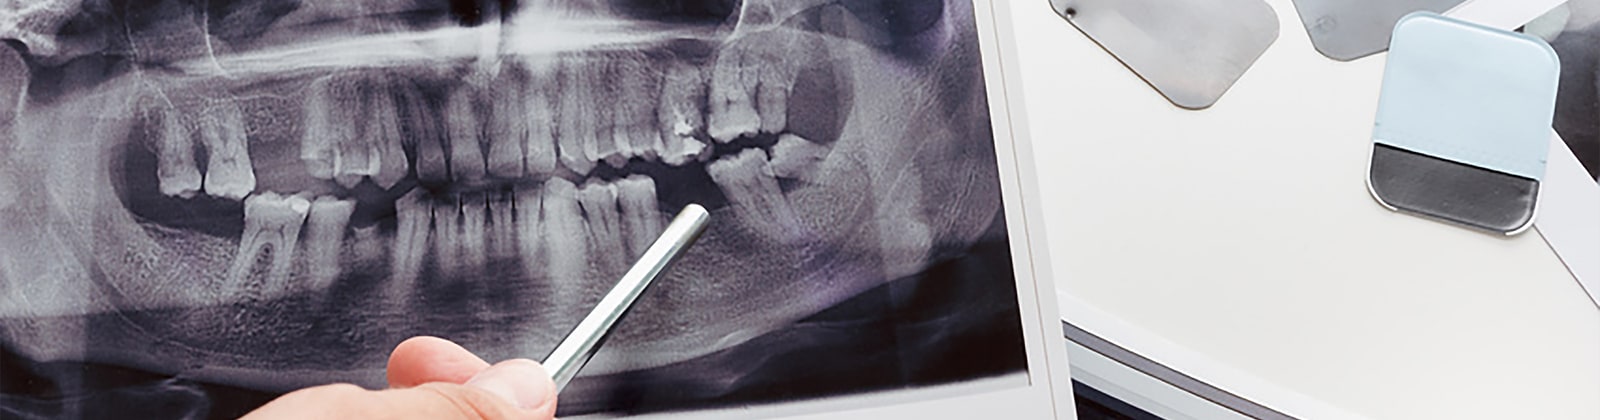 下顎の奥歯のインプラントができないと言われるケース